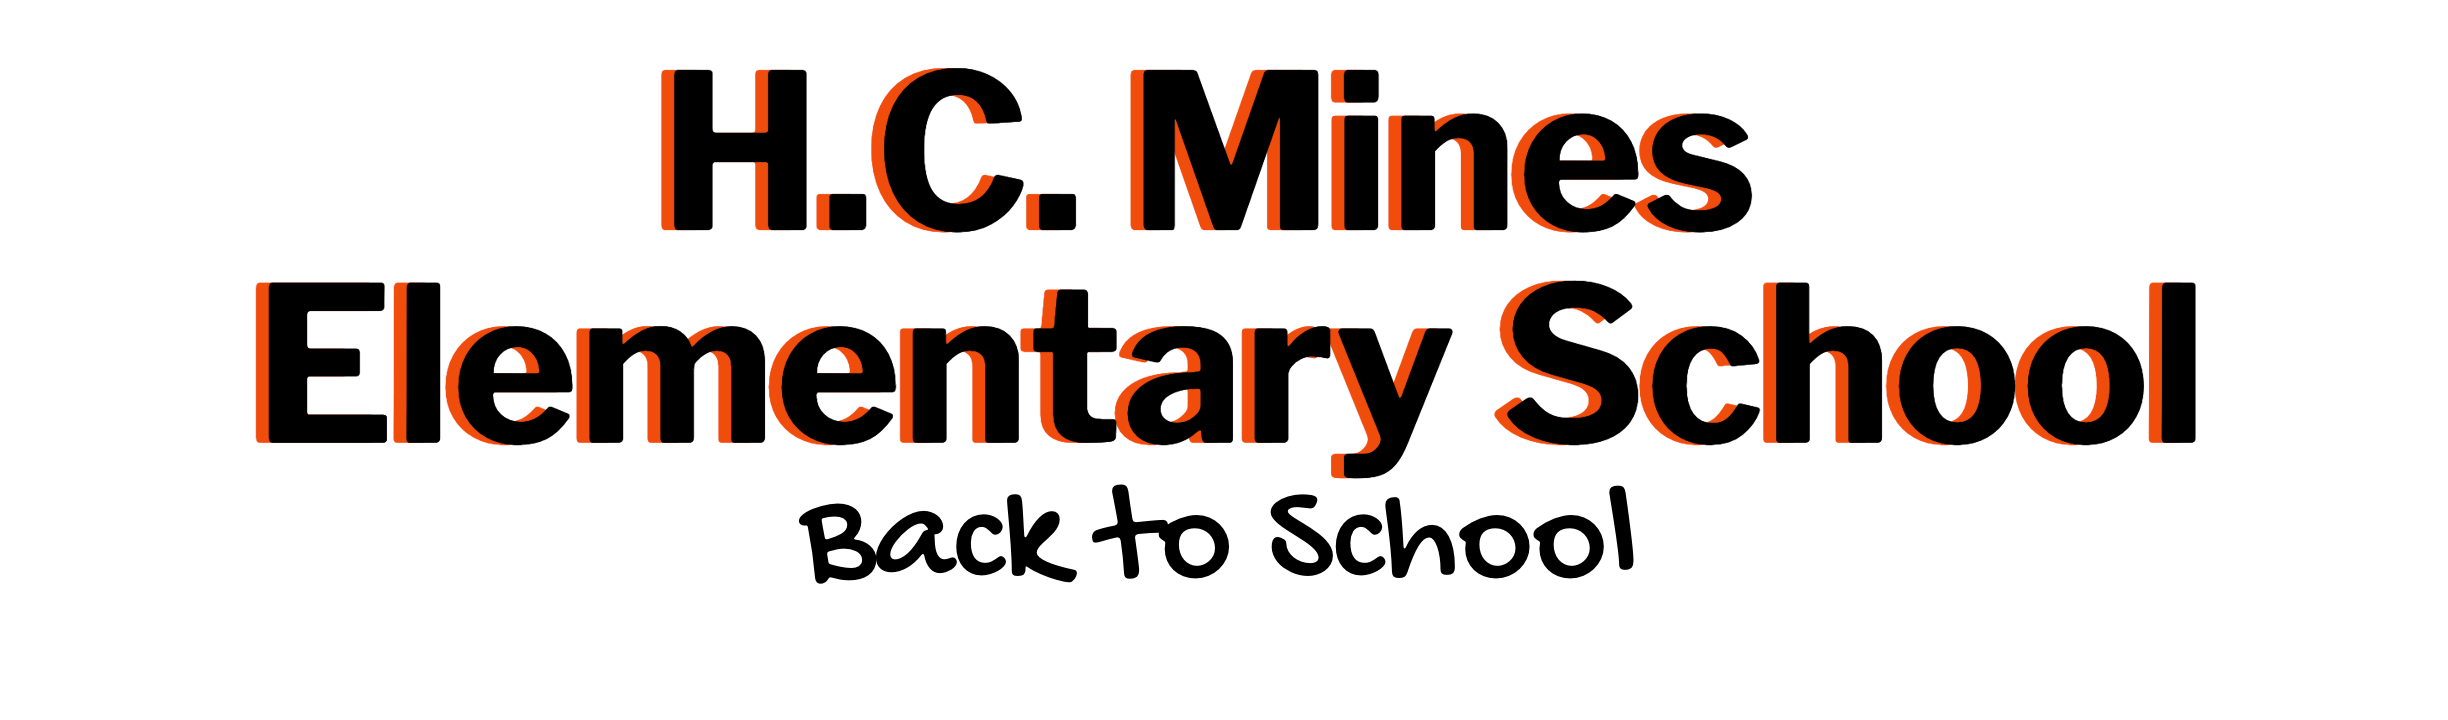 H.C. Mines Elementary School